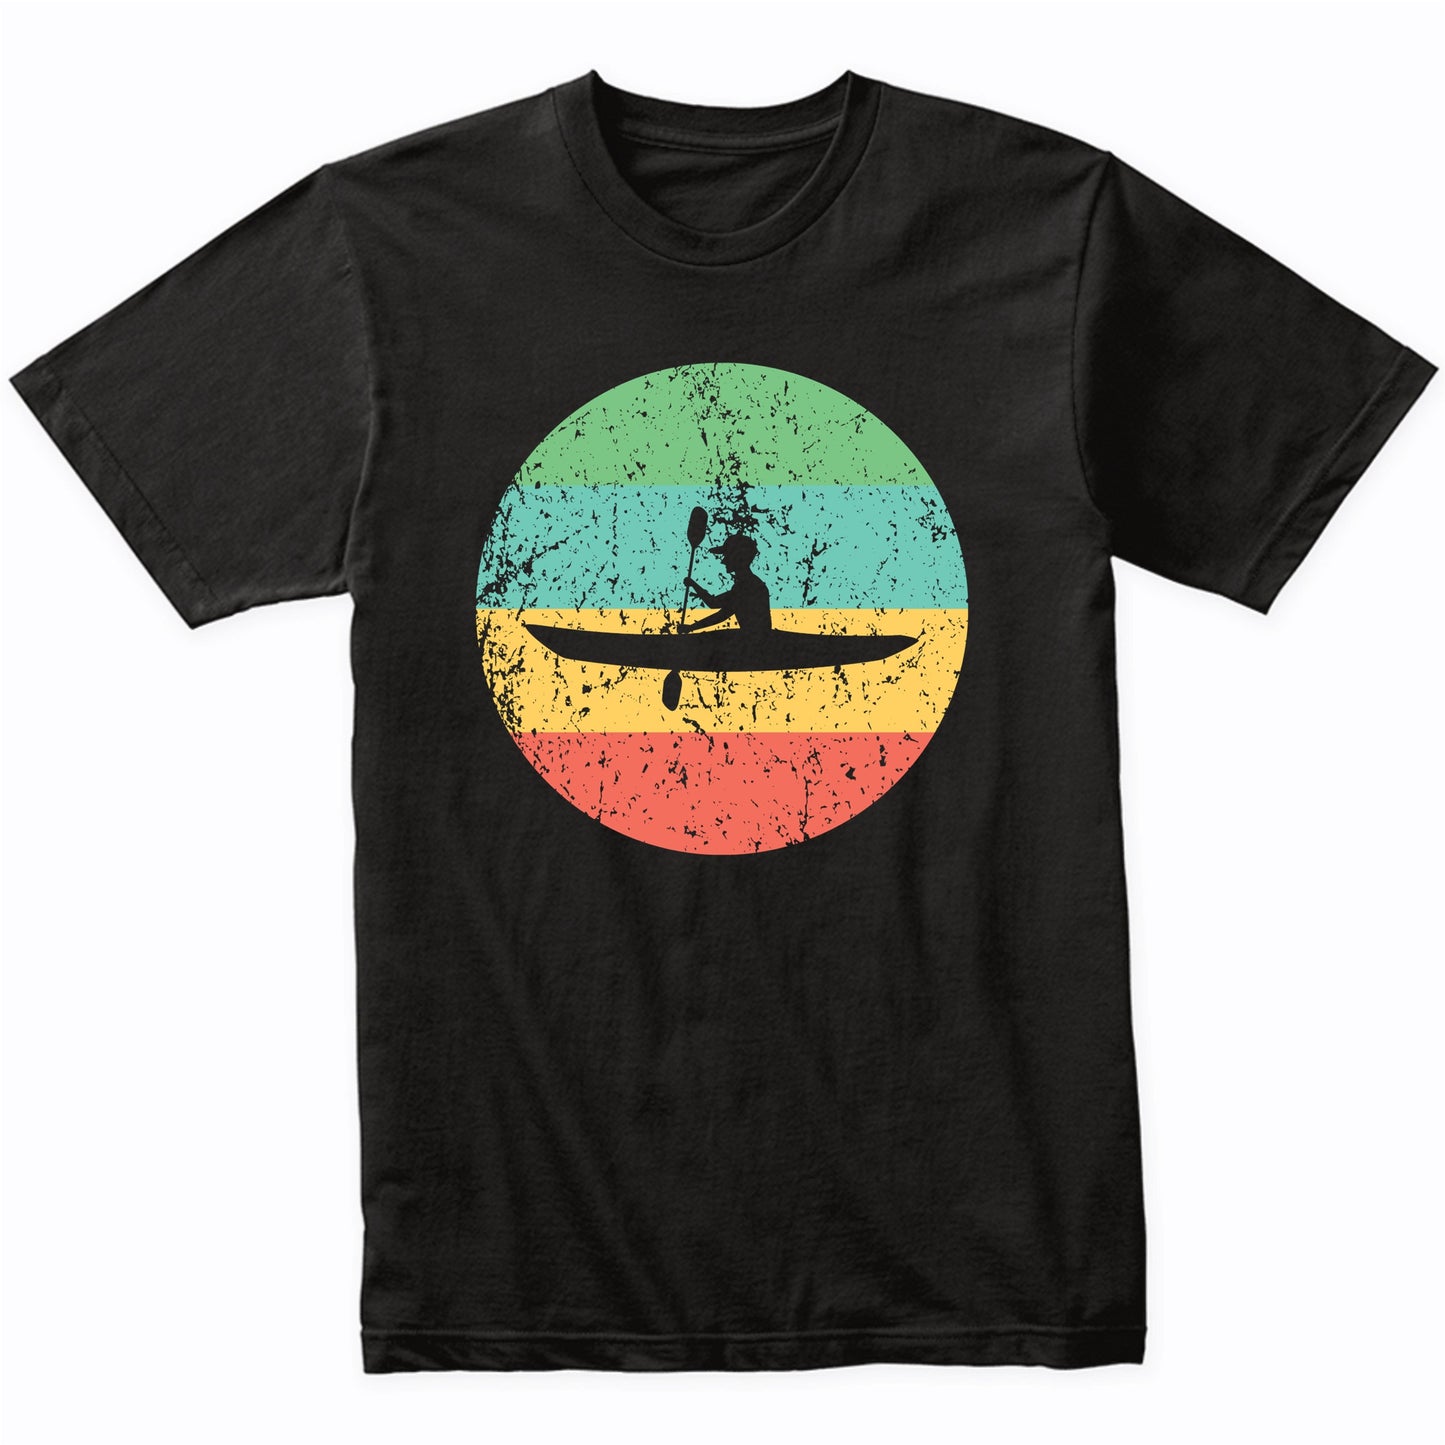 Kayaking Shirt - Vintage Retro Kayak T-Shirt